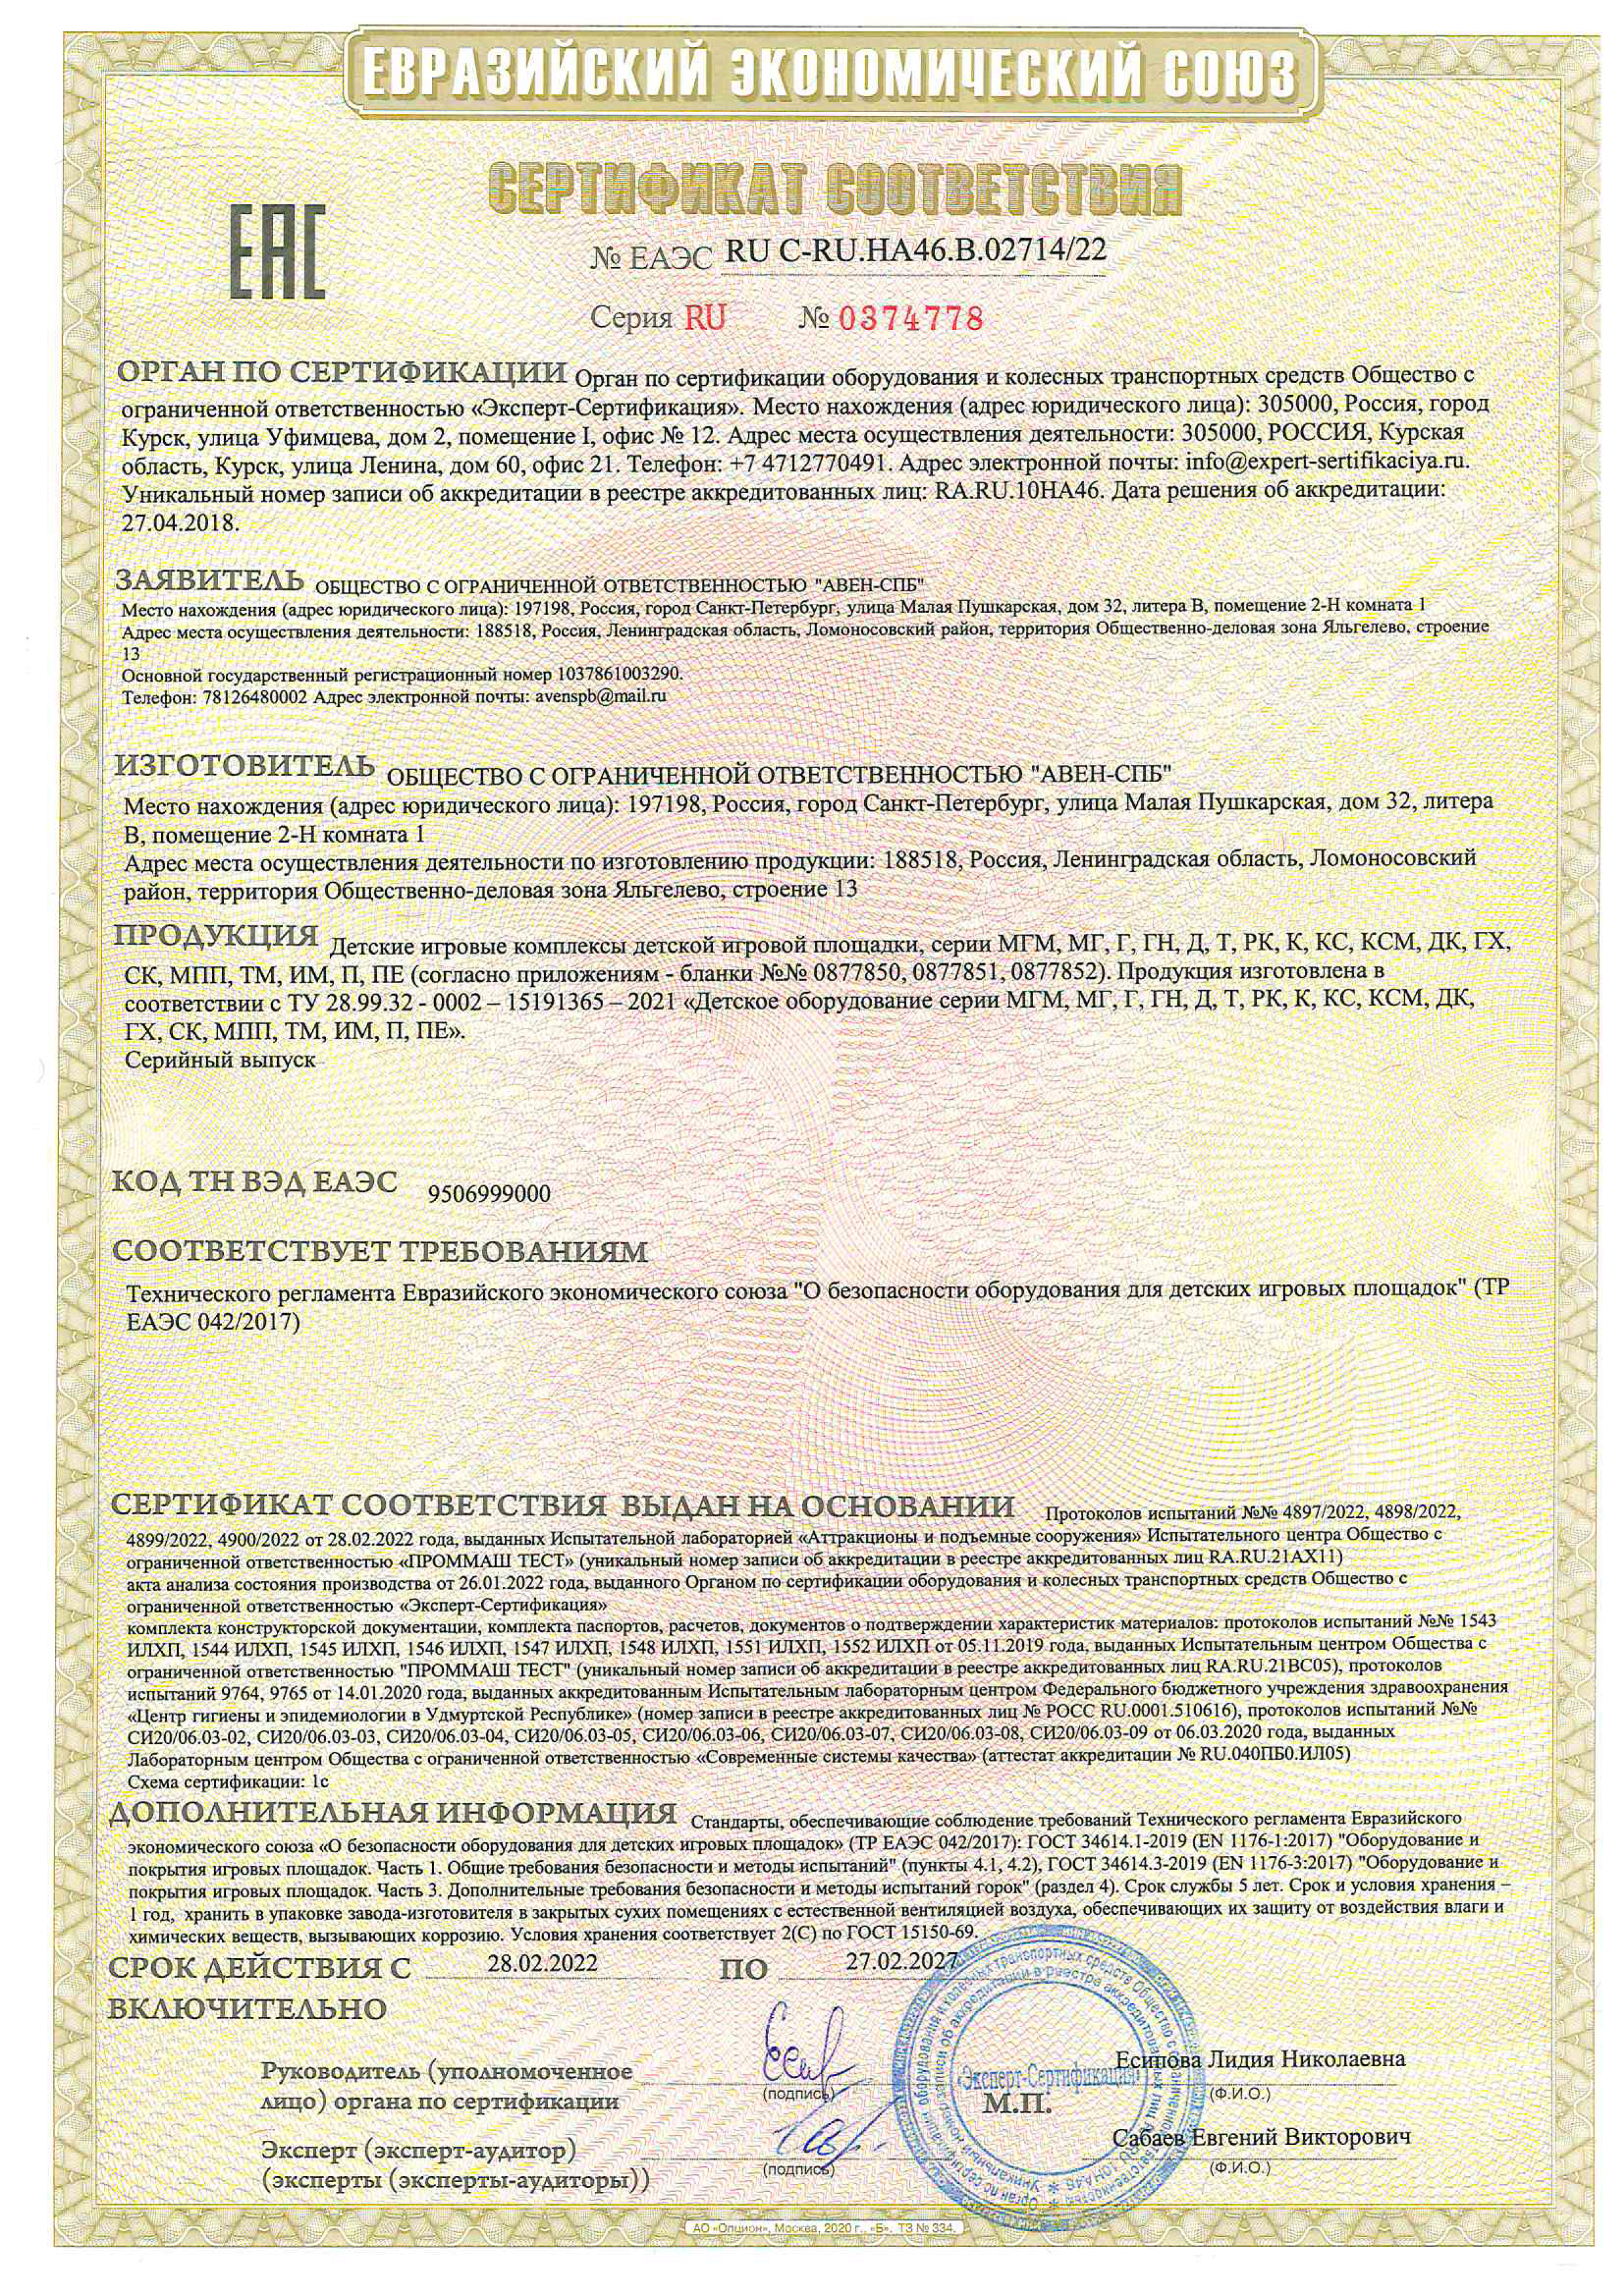 Сертификат   соответствия № ЕА   ЭC RU-C-RU.HA46.B.02714/22 cерияz RU № 0374778 на детское игровое оборудование _детские игроаые комплексы 